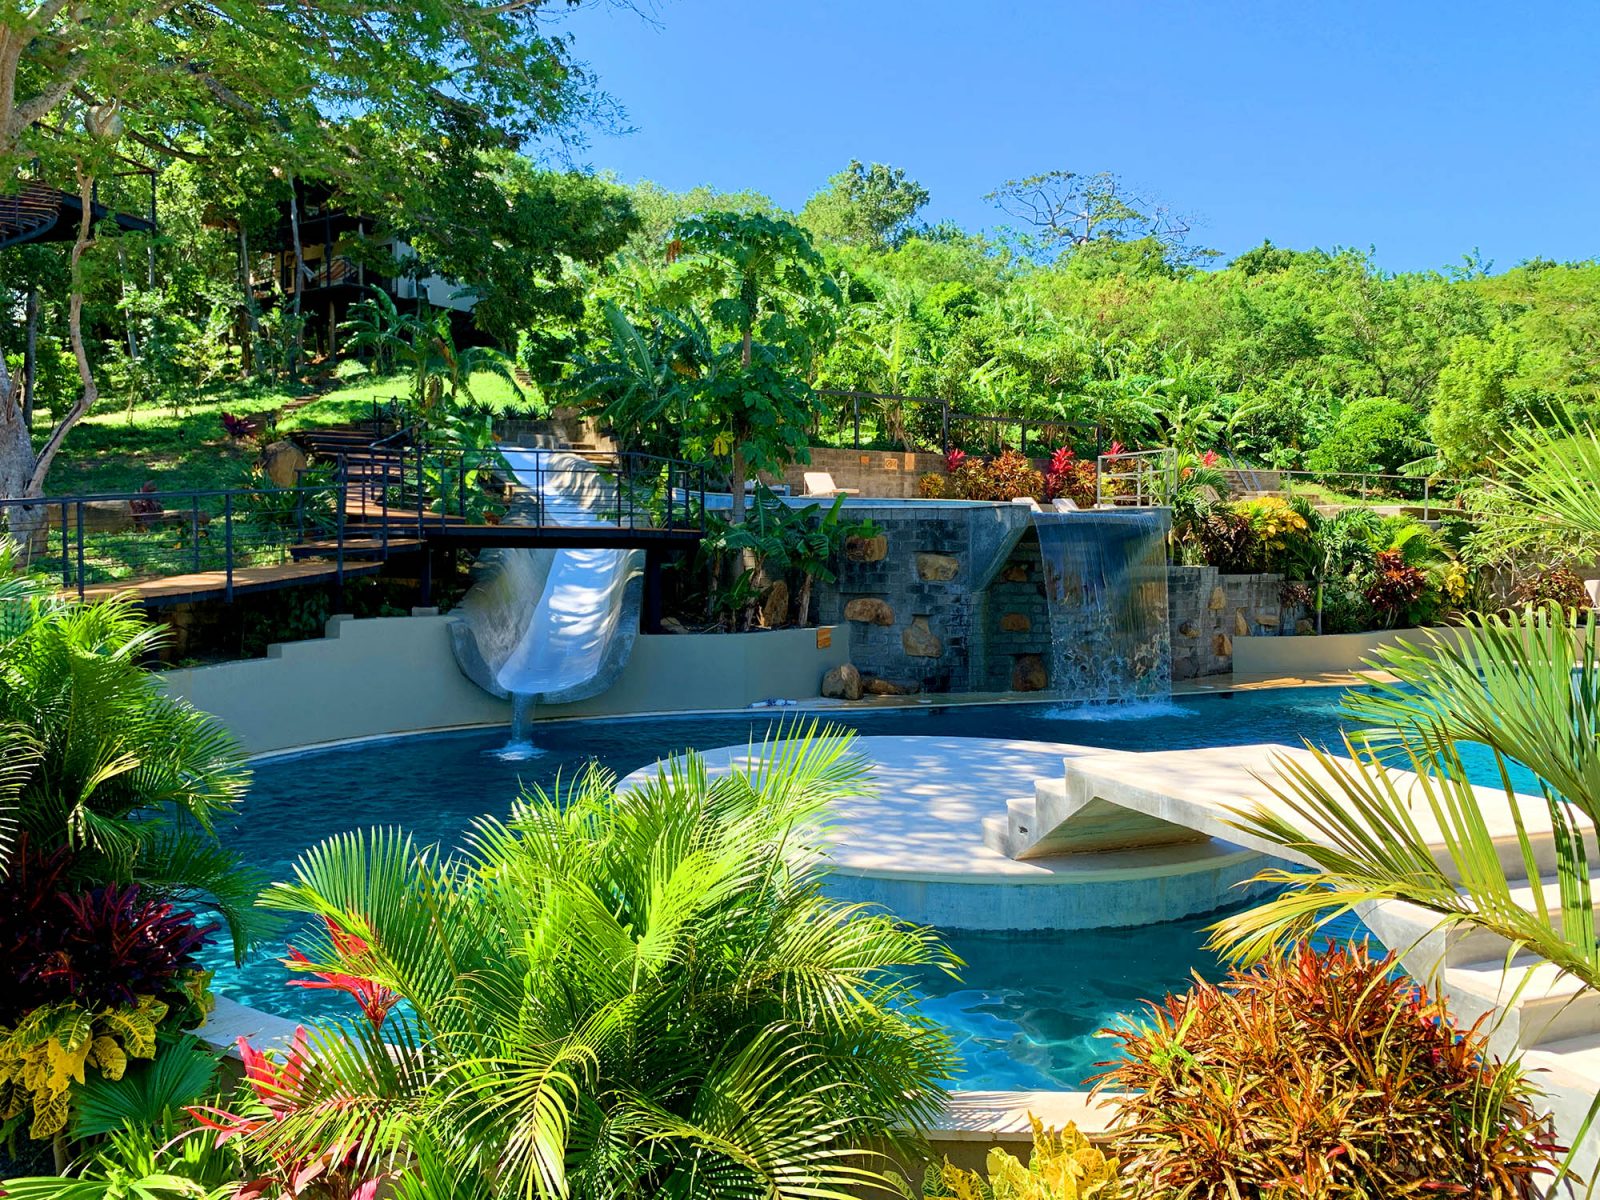 Tree Casa Resort - San Juan Del Sur - Nicaragua